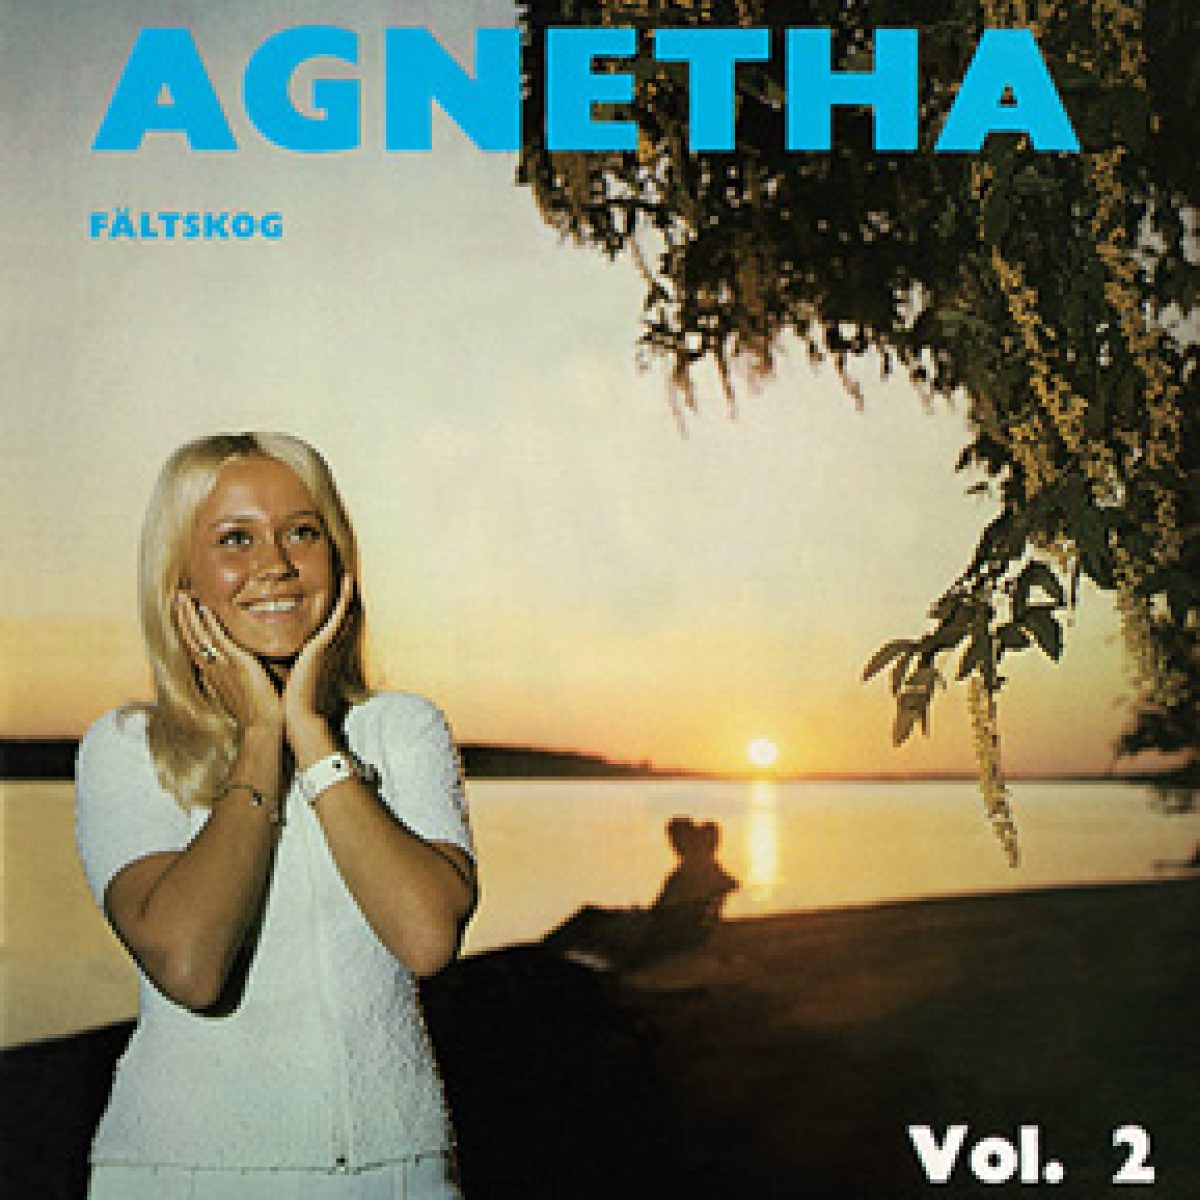 Agnetha Fältskog, Agnetha Fältskog Vol. 2